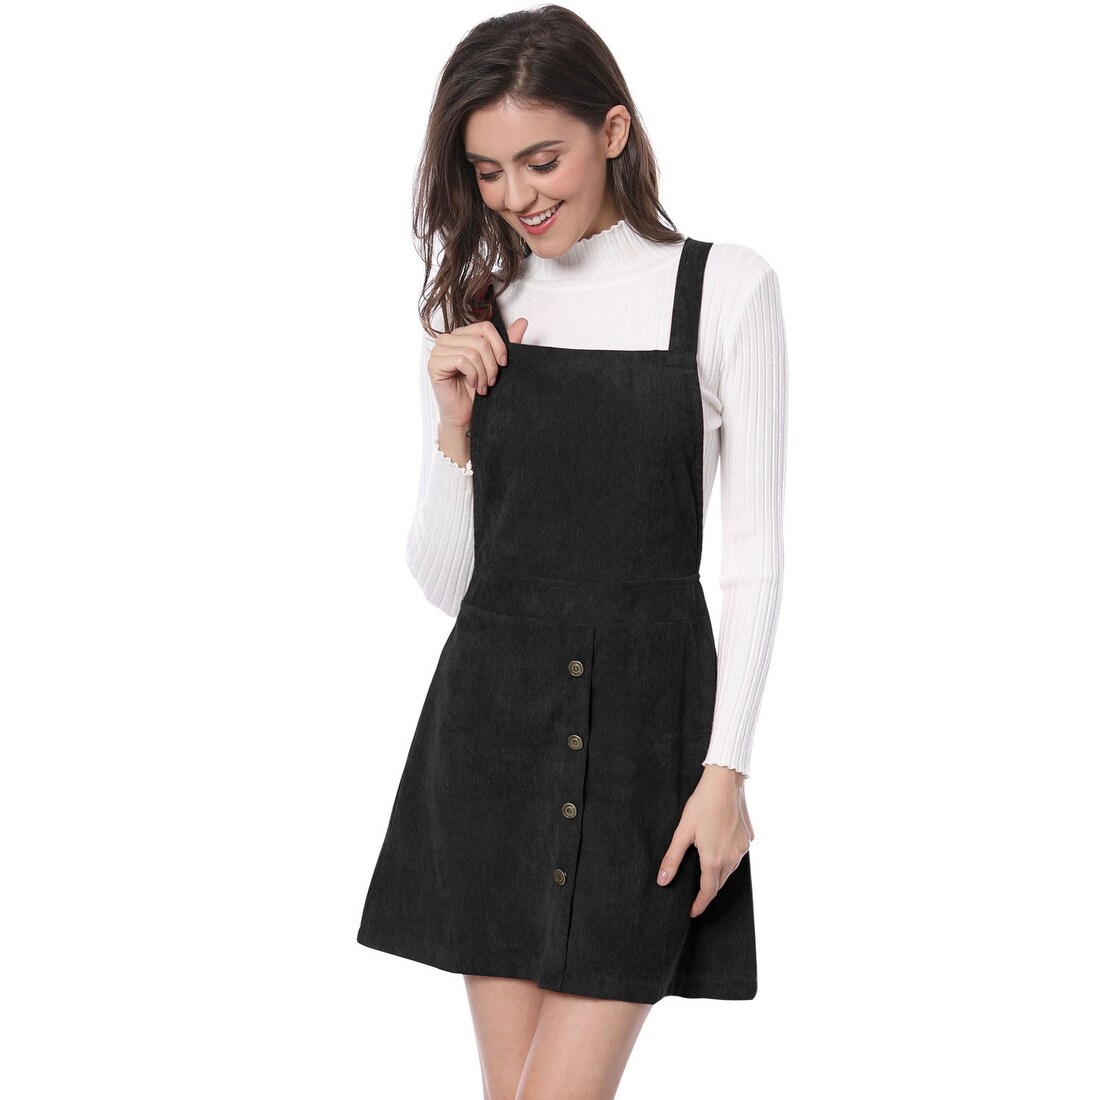 black overall skirt dress